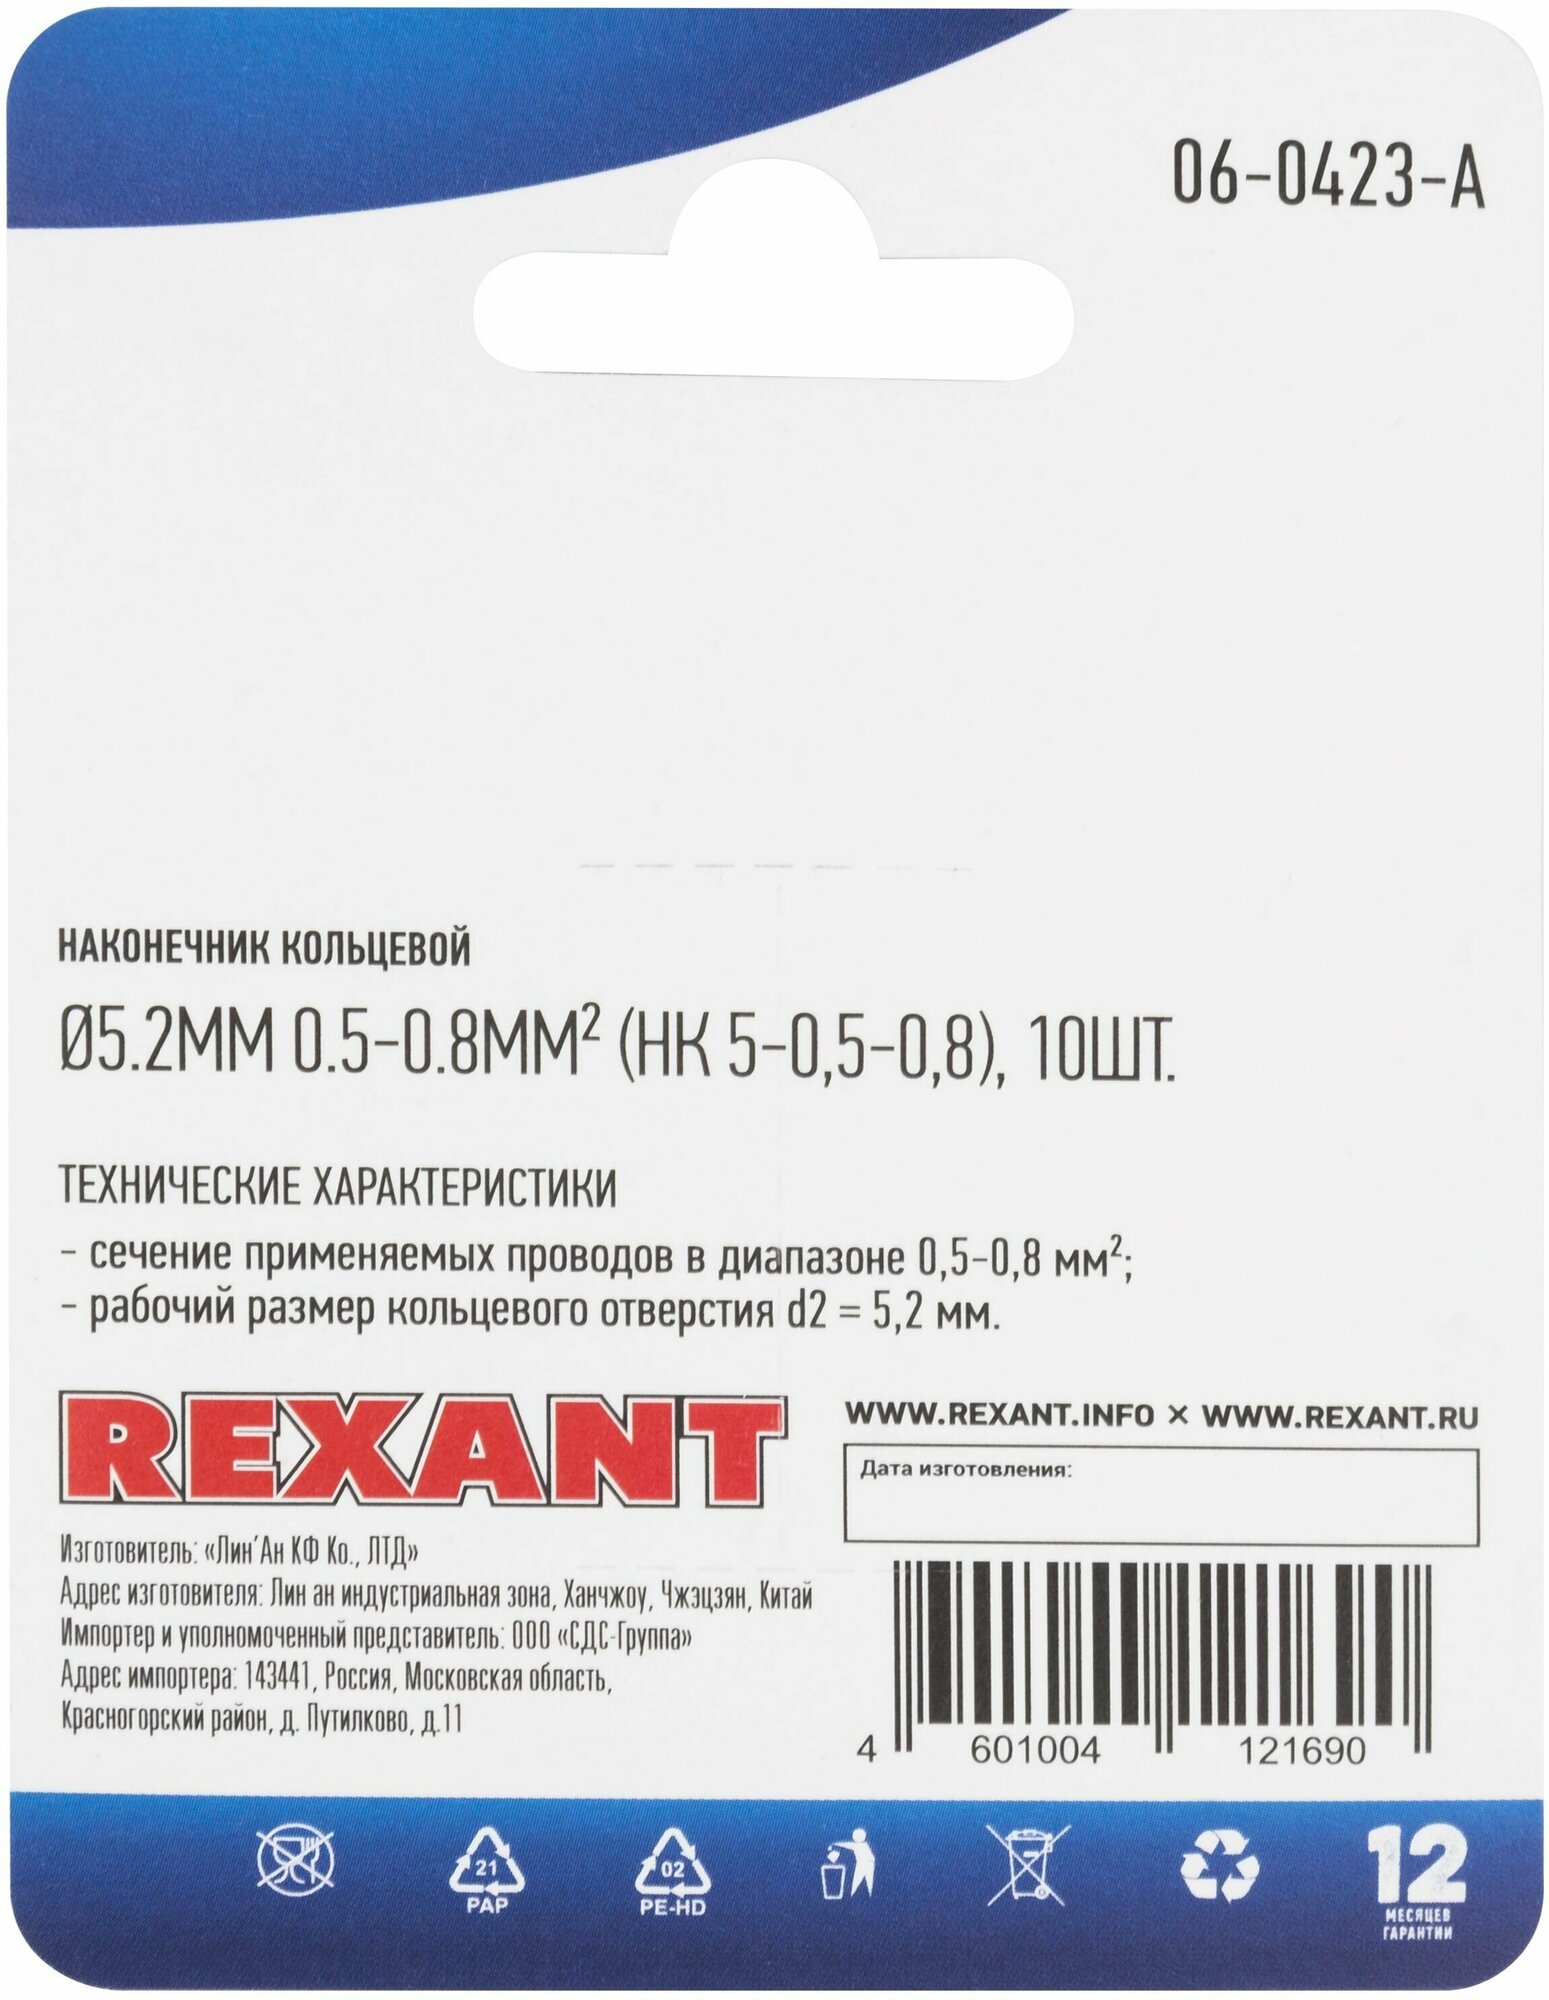 Наконечник кольцевой REXANT d 5.2 мм, 0.5-0.8мм2, НК 5-0,5-0,8, в упаковке 10 шт. - фотография № 3